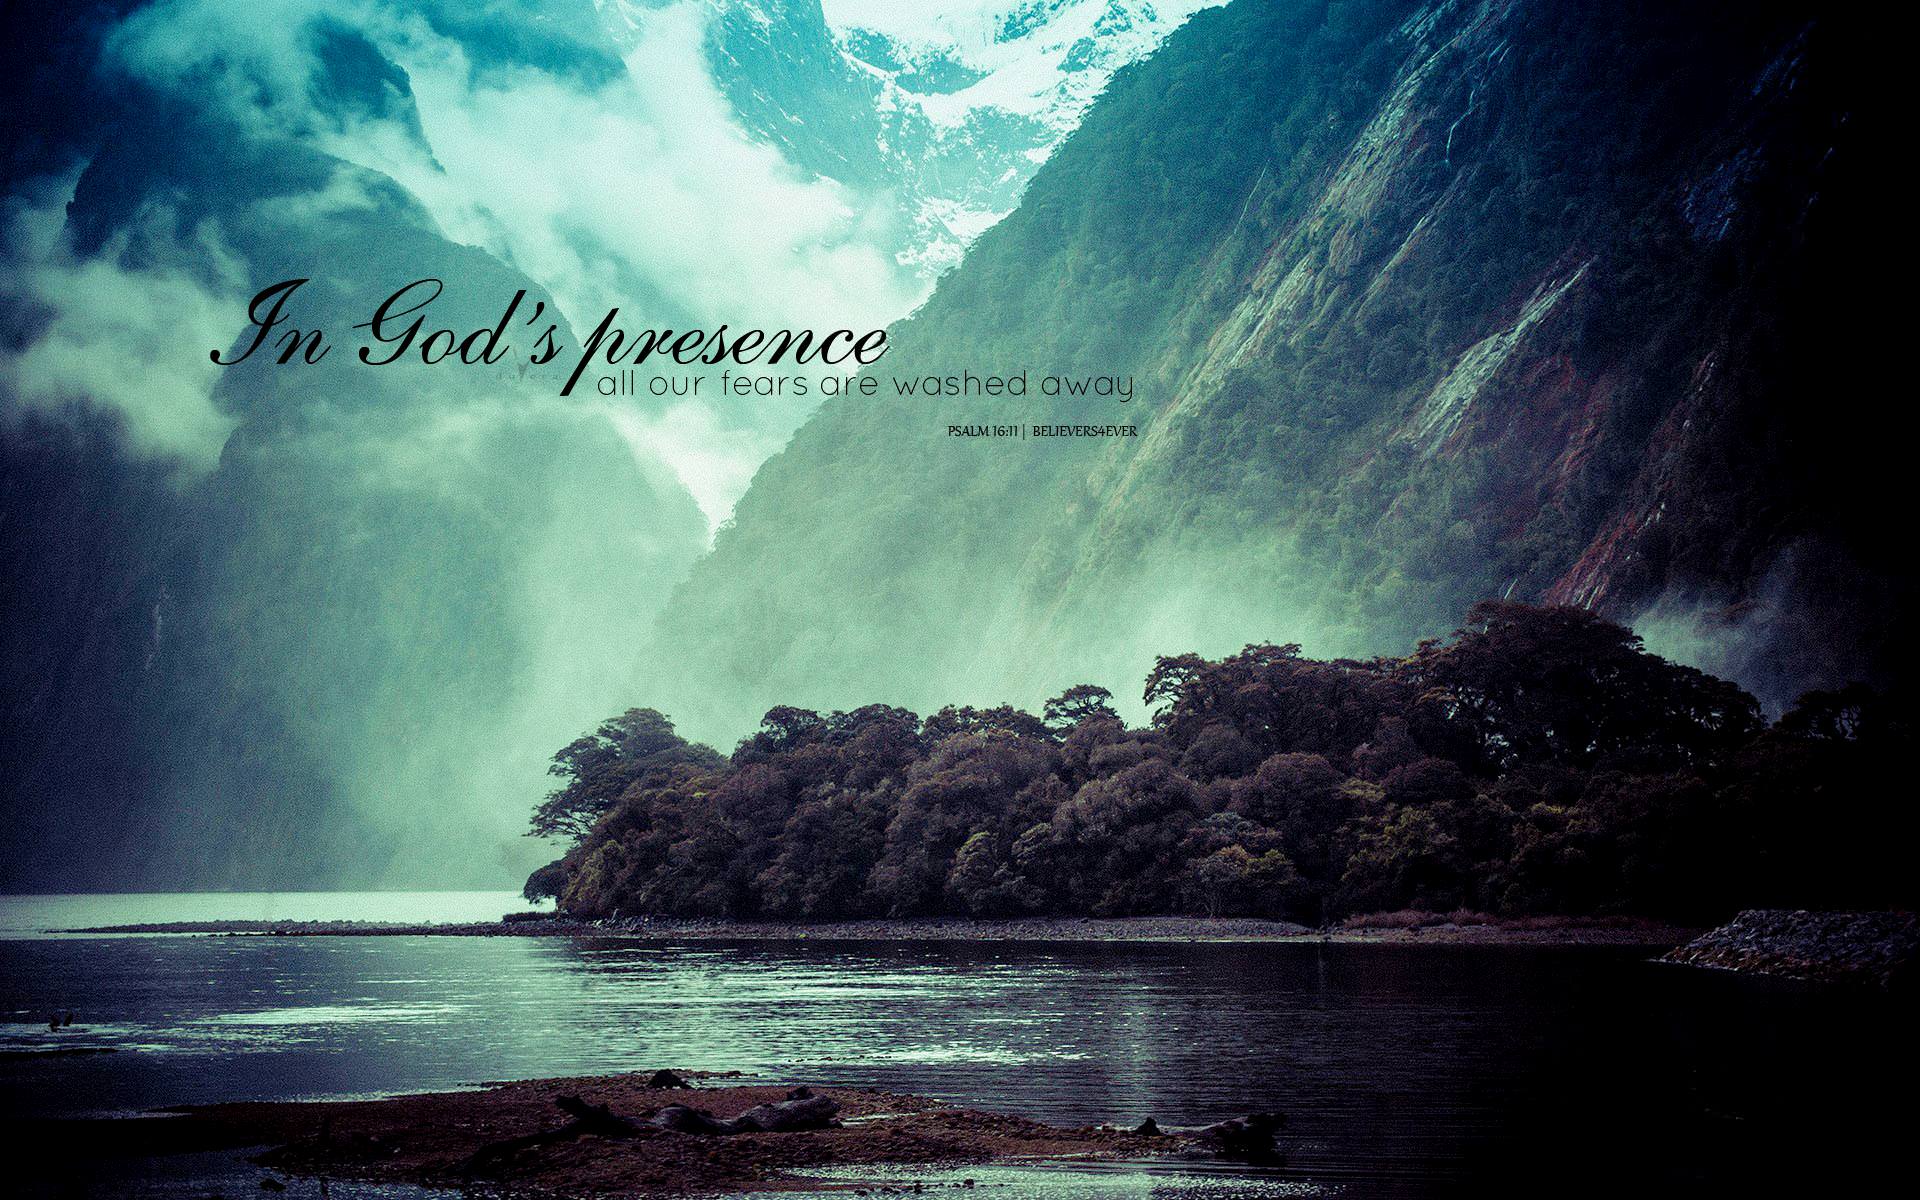 In God's presence